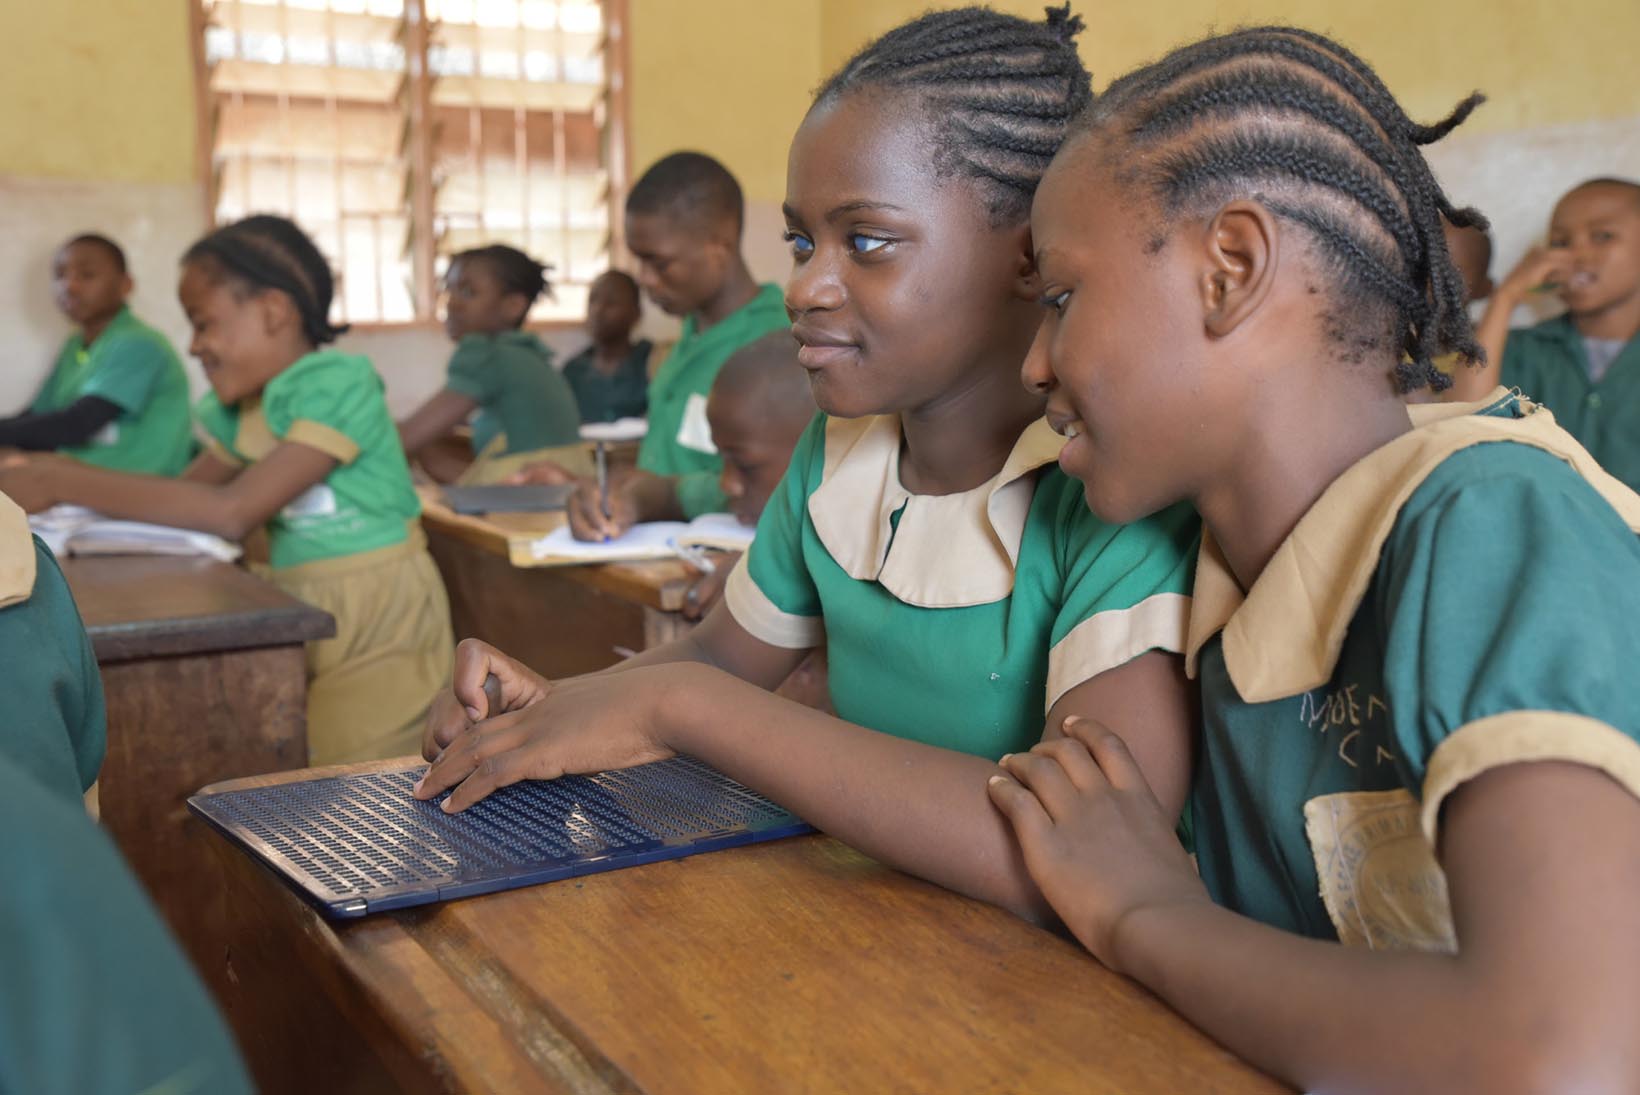 Una ragazzina camerunense seduta al banco di scuola sta prendendo appunti in Braille. La compagna seduta accanto a lei osserva quello che fa. 